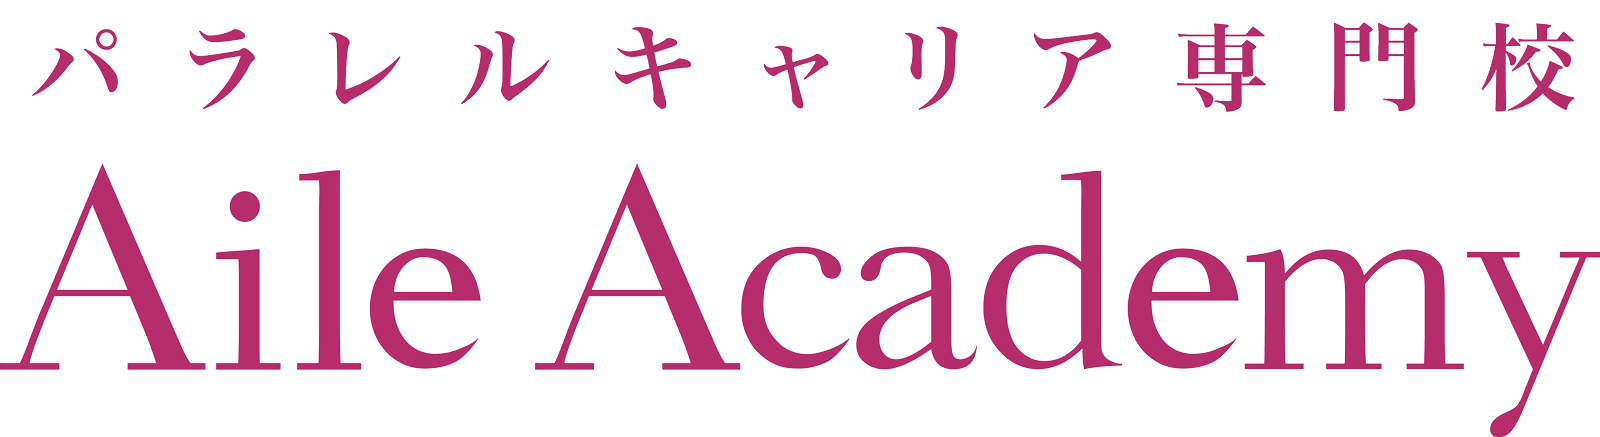 Aile Academy